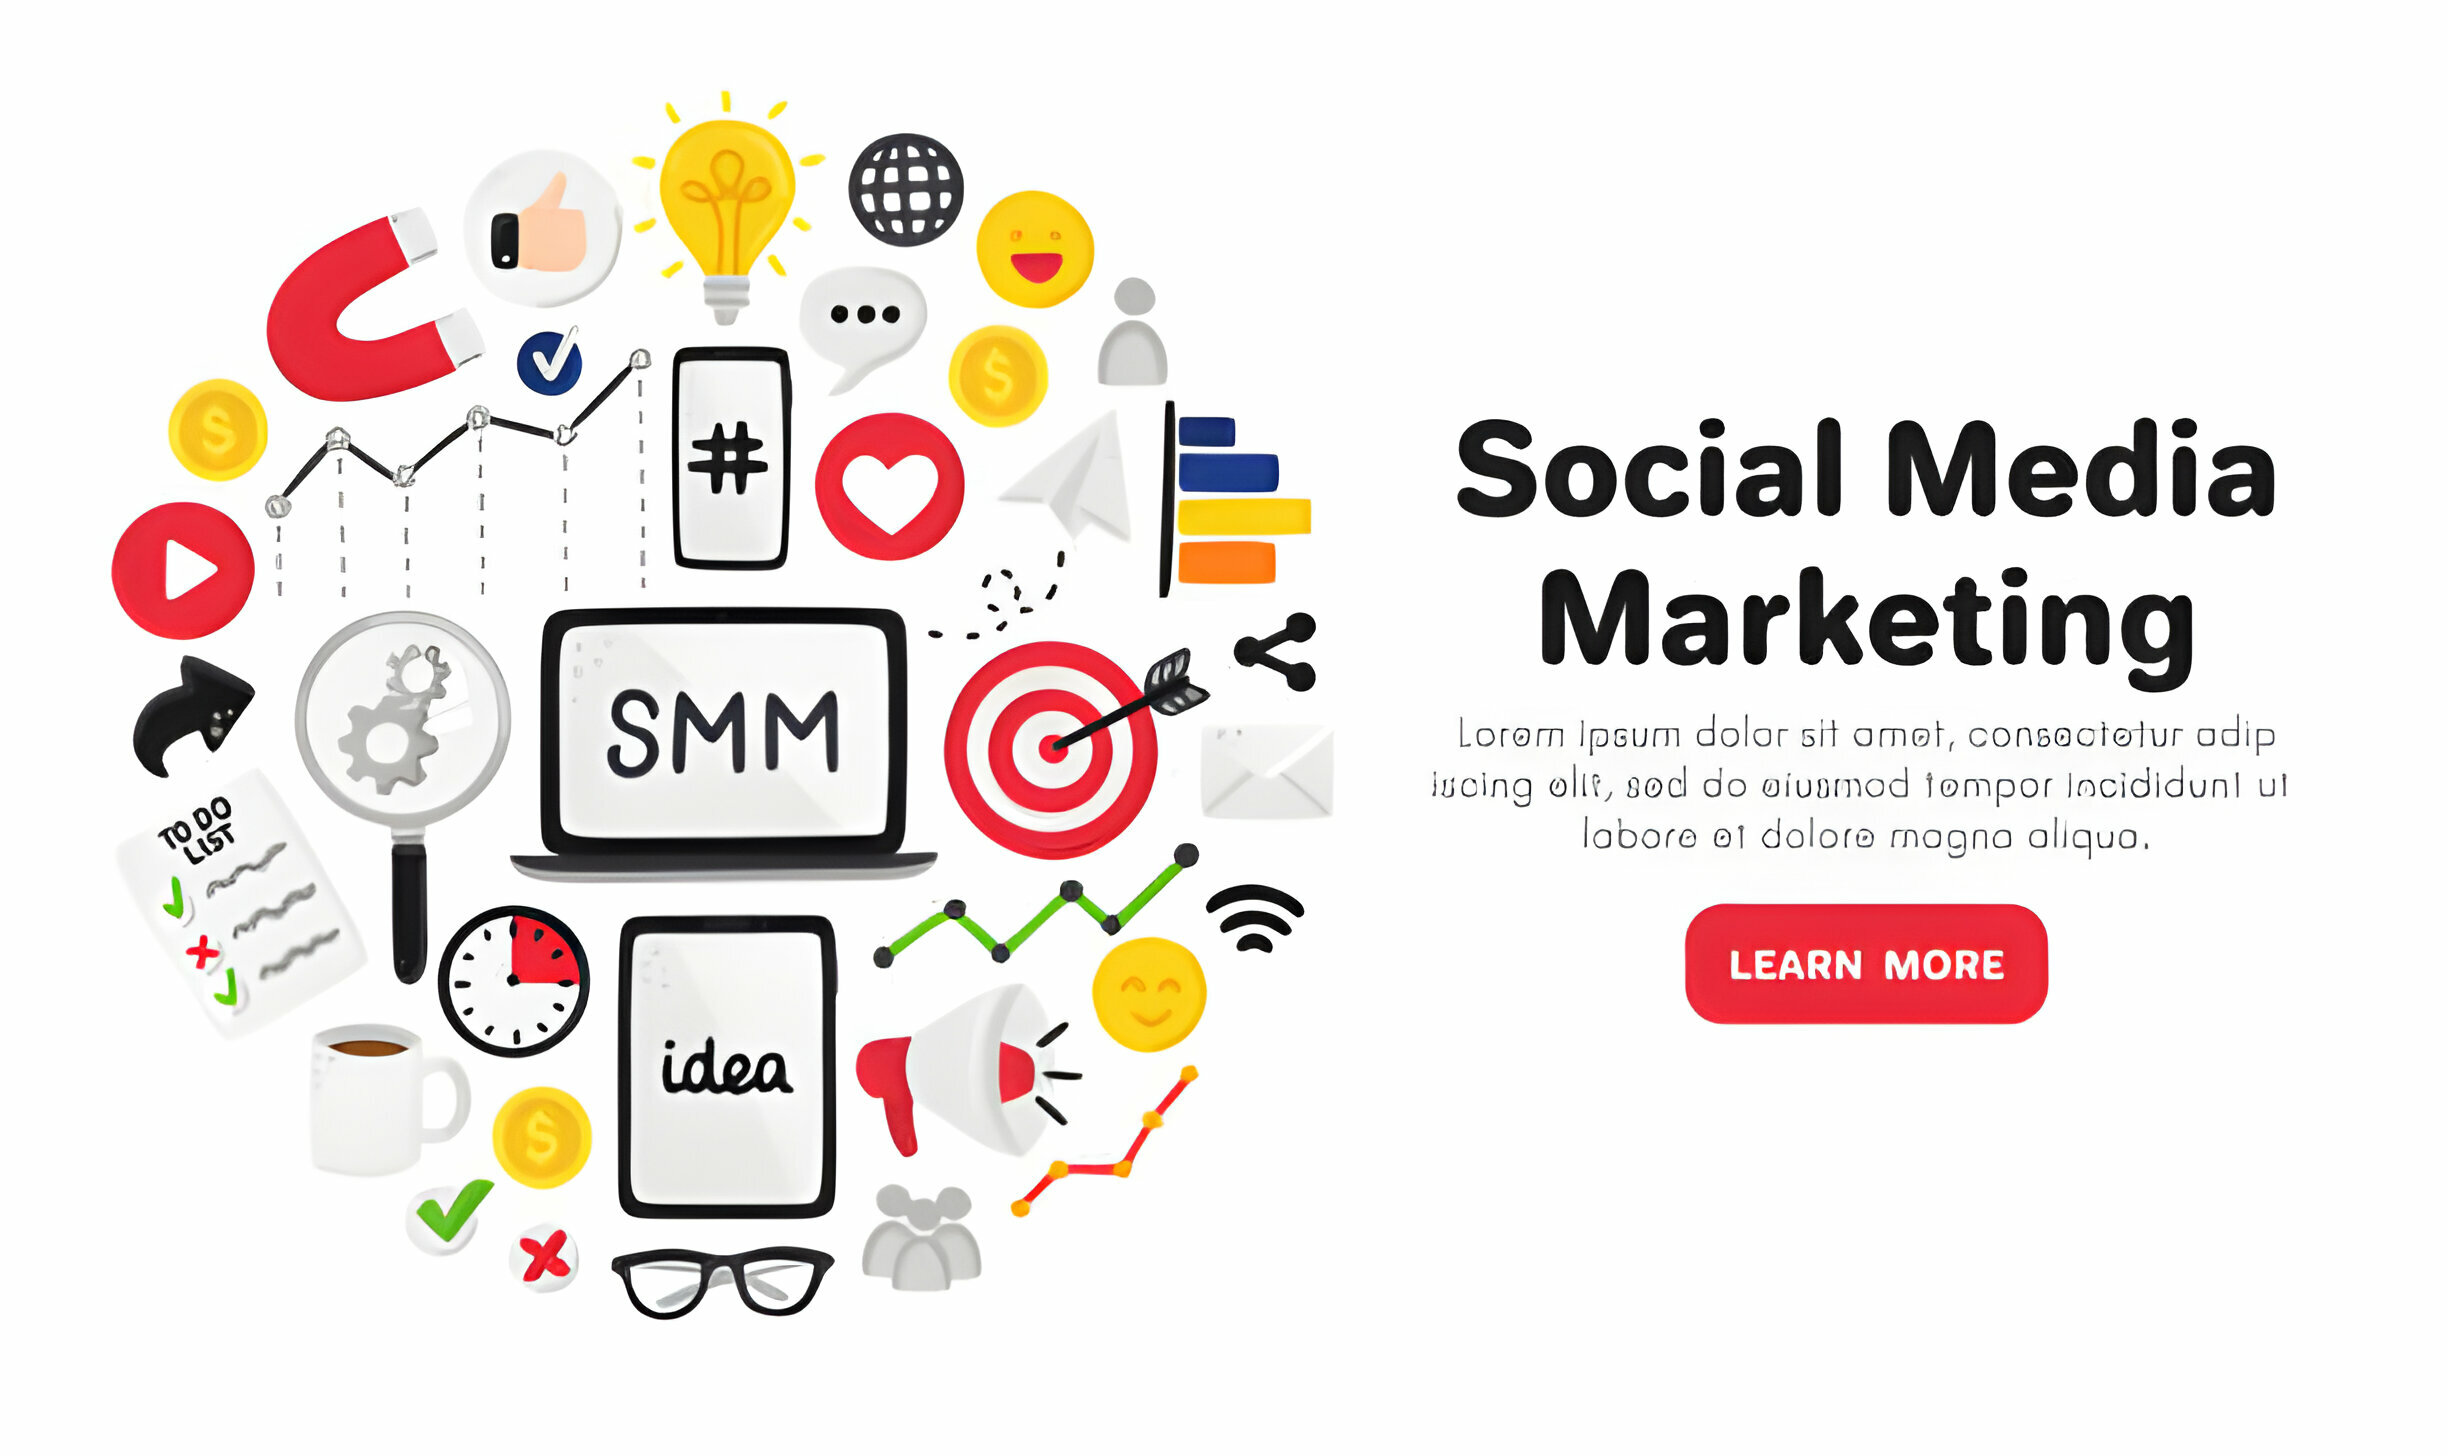 Hyperlocal Social Media Marketing: Potential